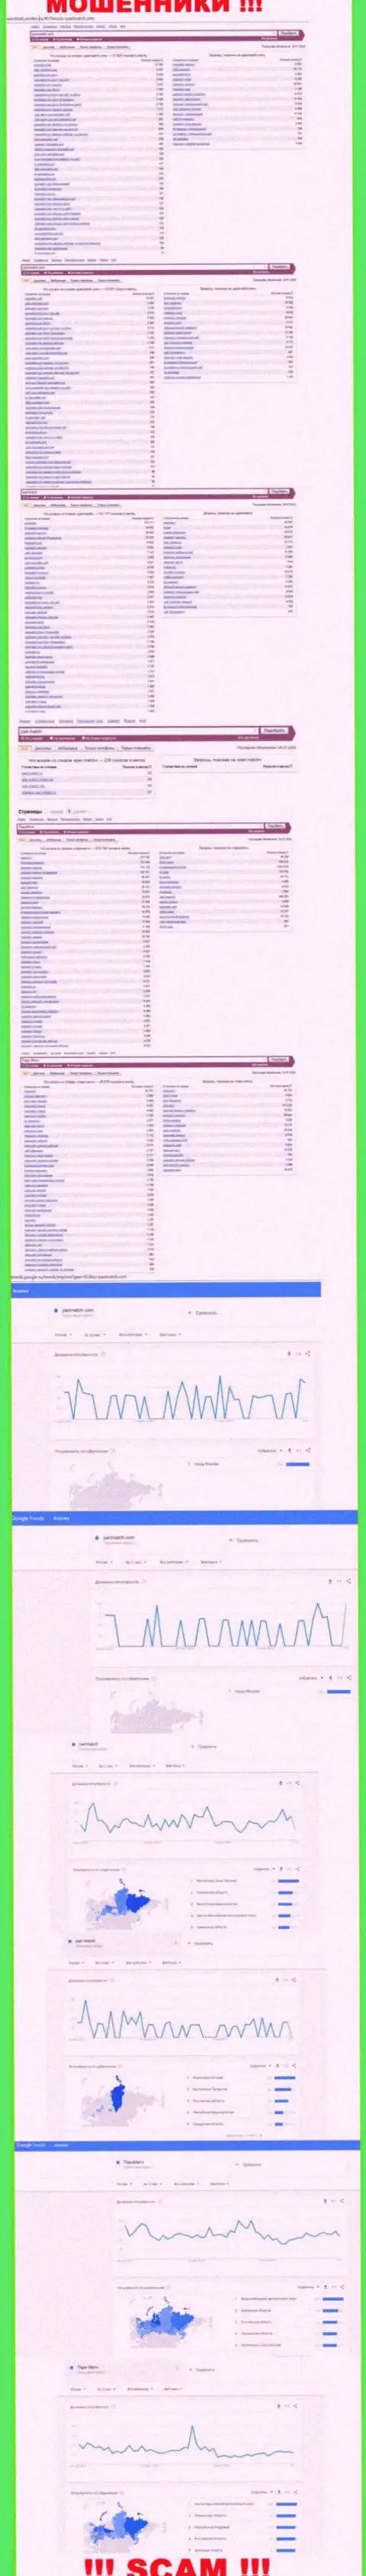 Число поисковых запросов в поисковиках глобальной интернет сети по бренду мошенников ПариМатч Ком